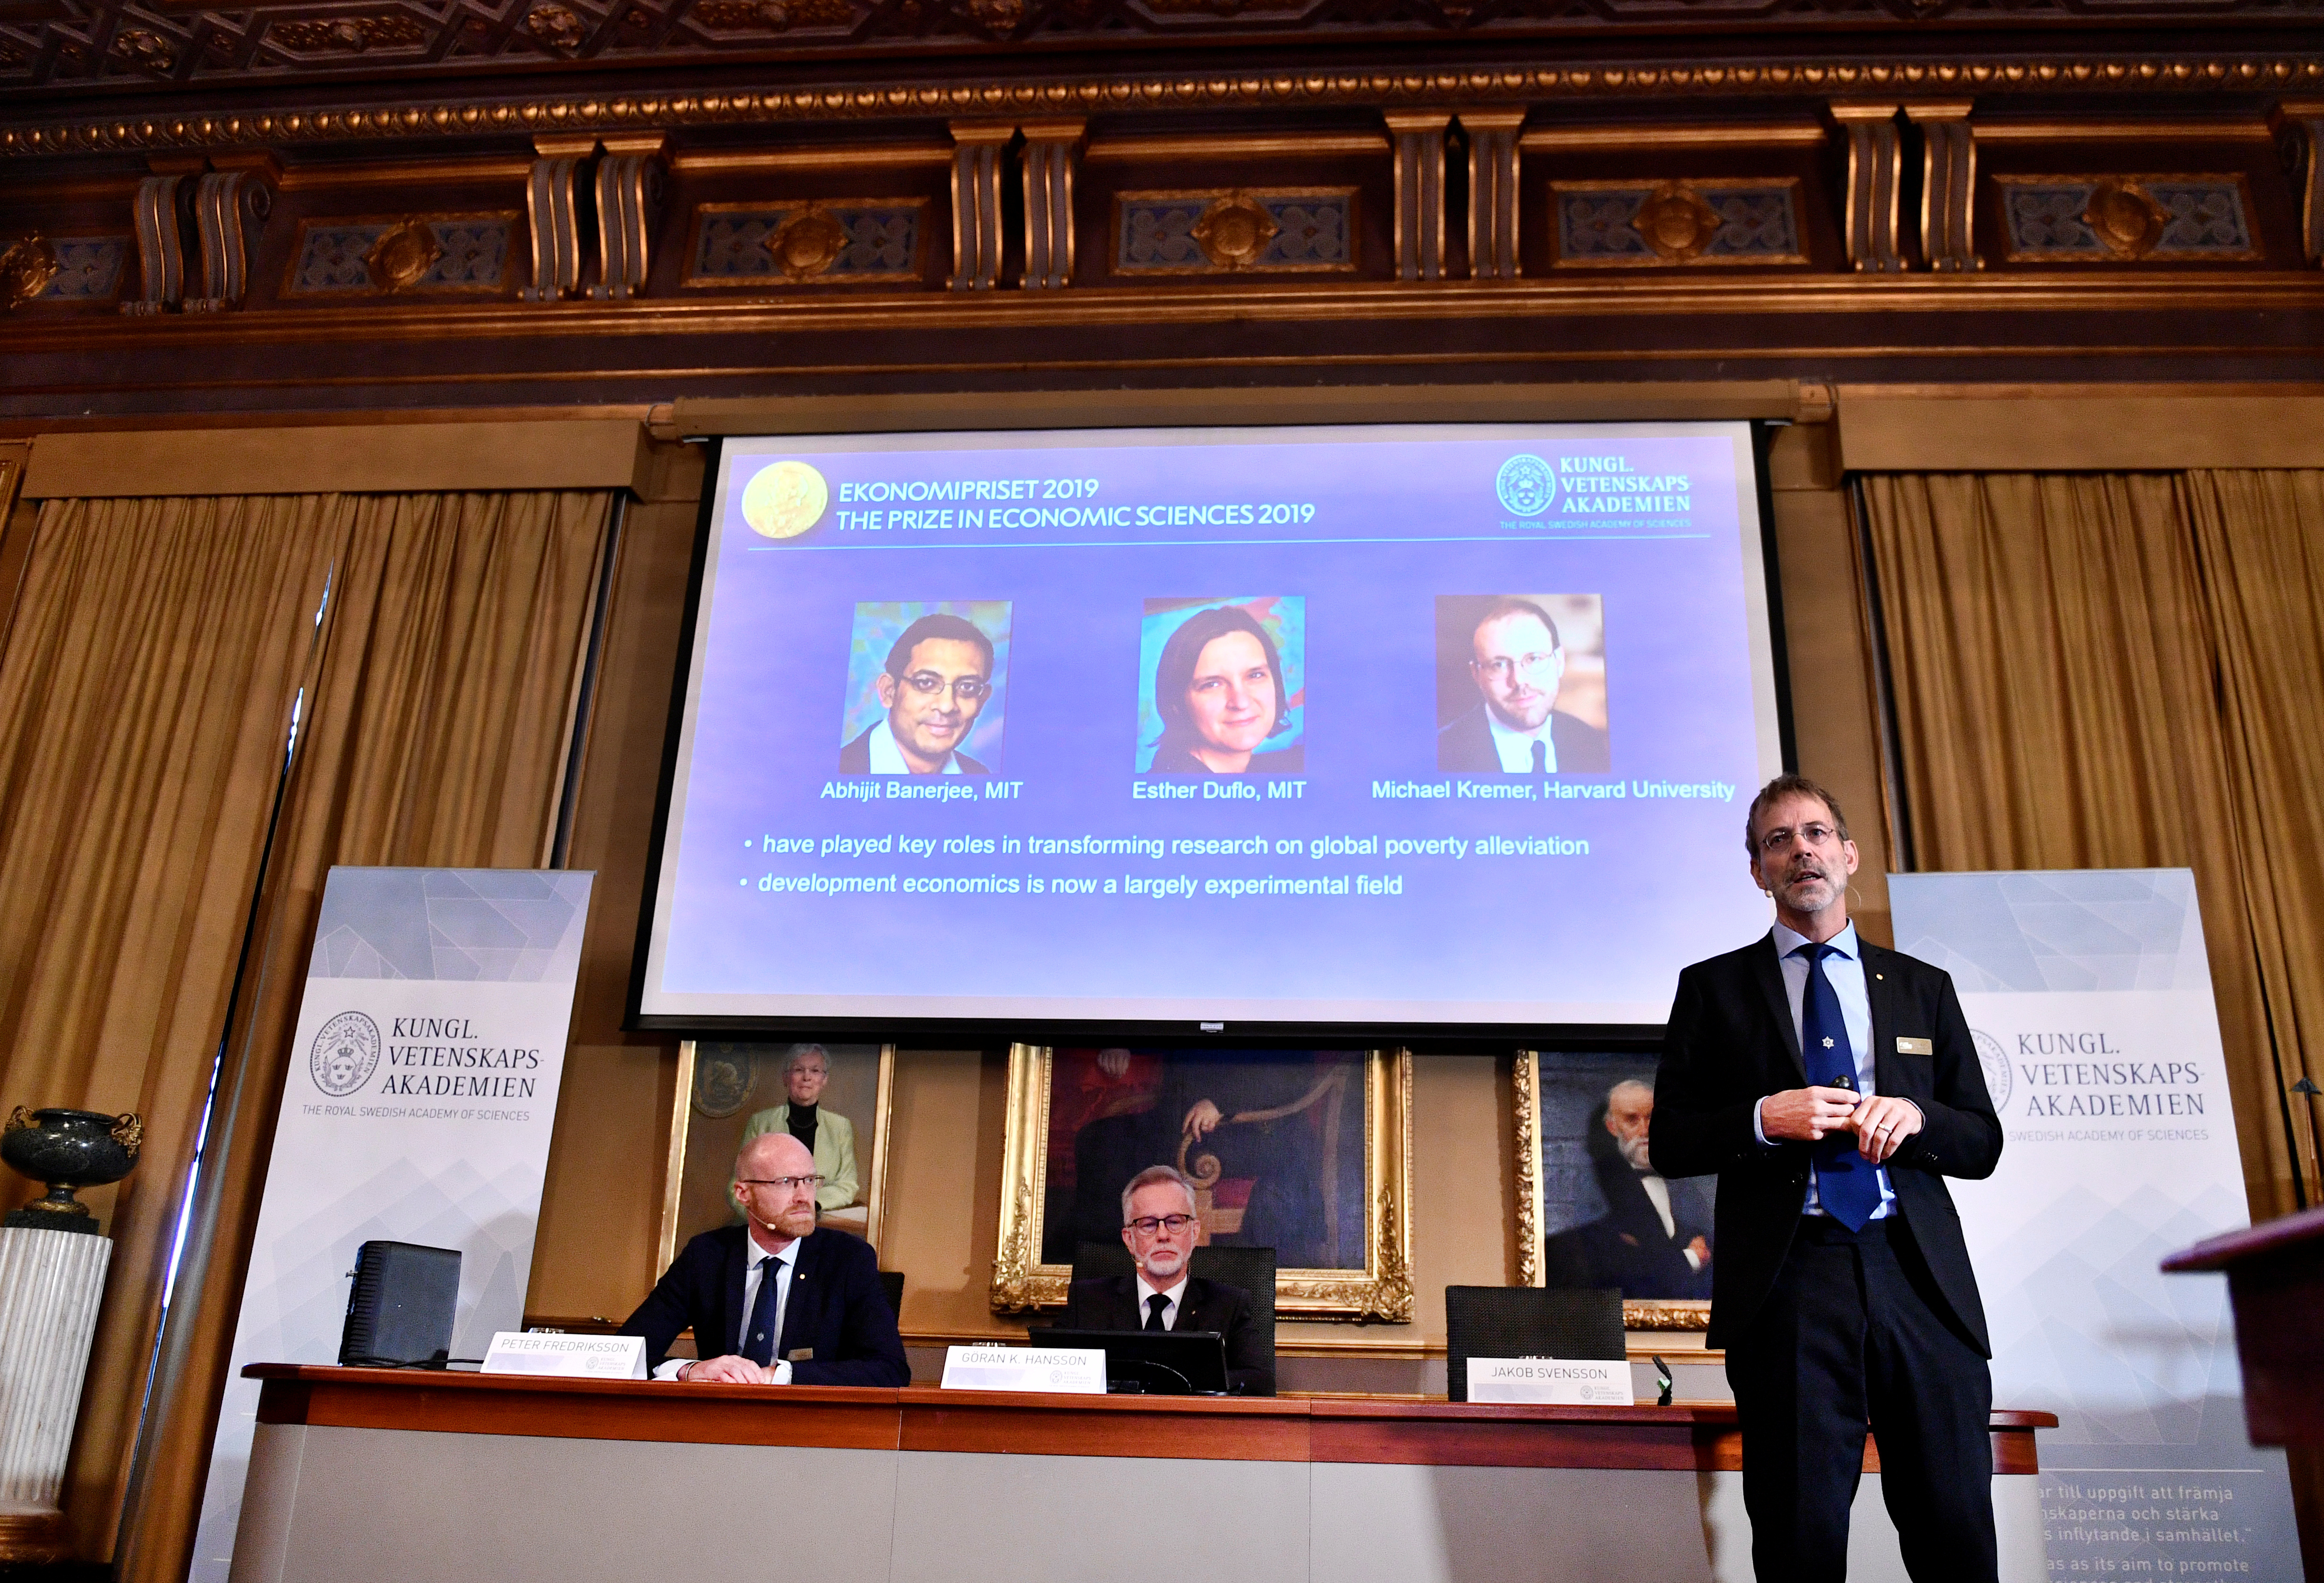 Premio Nobel de Economía fue otorgado a Abhijit Banerjeee, Esther Duflo y Michael Kremer